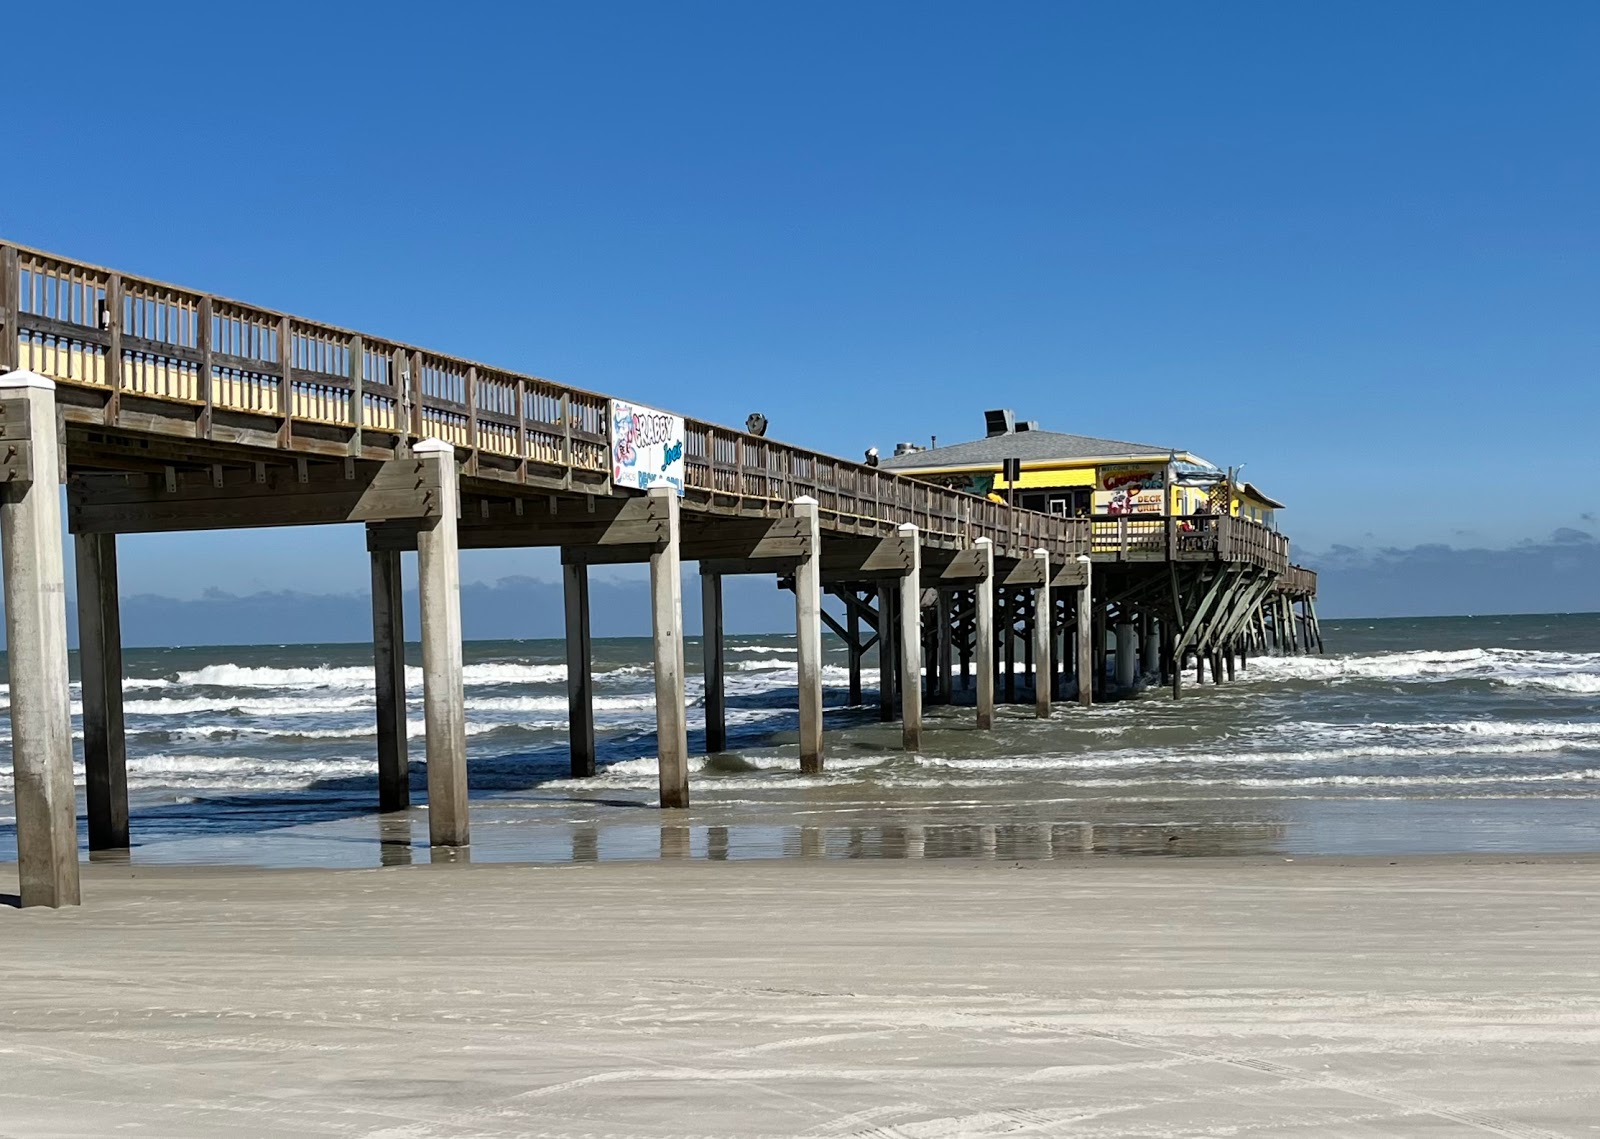 Fotografie cu Daytona beach - locul popular printre cunoscătorii de relaxare